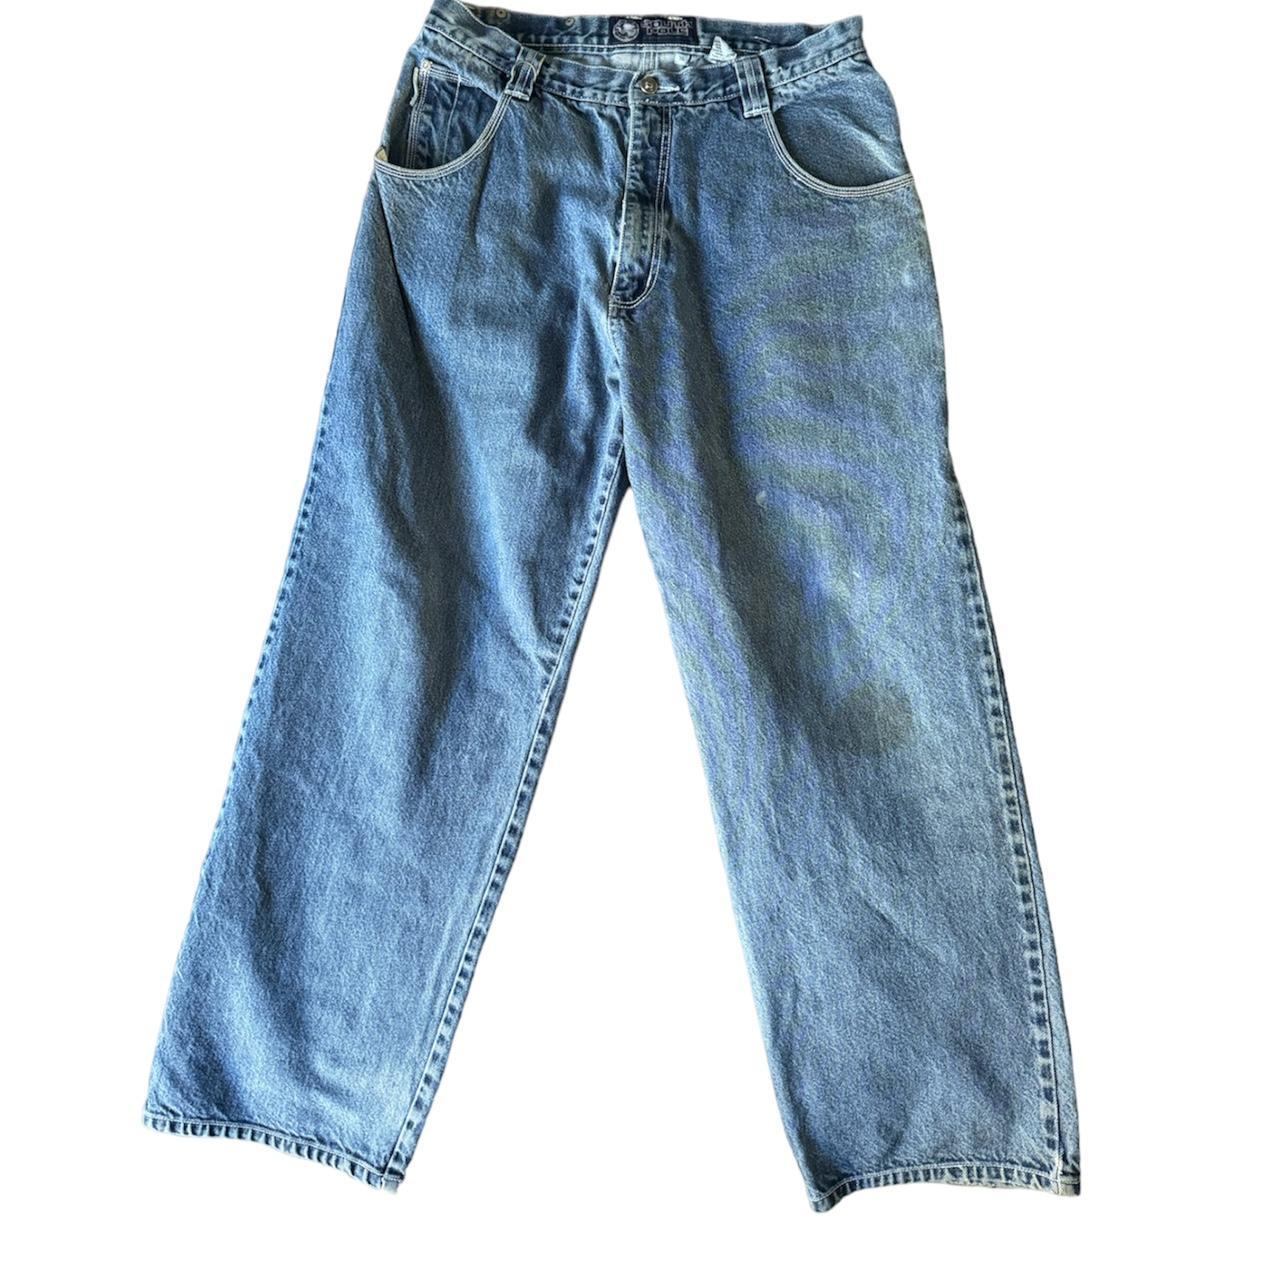 Southpole Jeans • measurements: inseam - 29.5’ &... - Depop